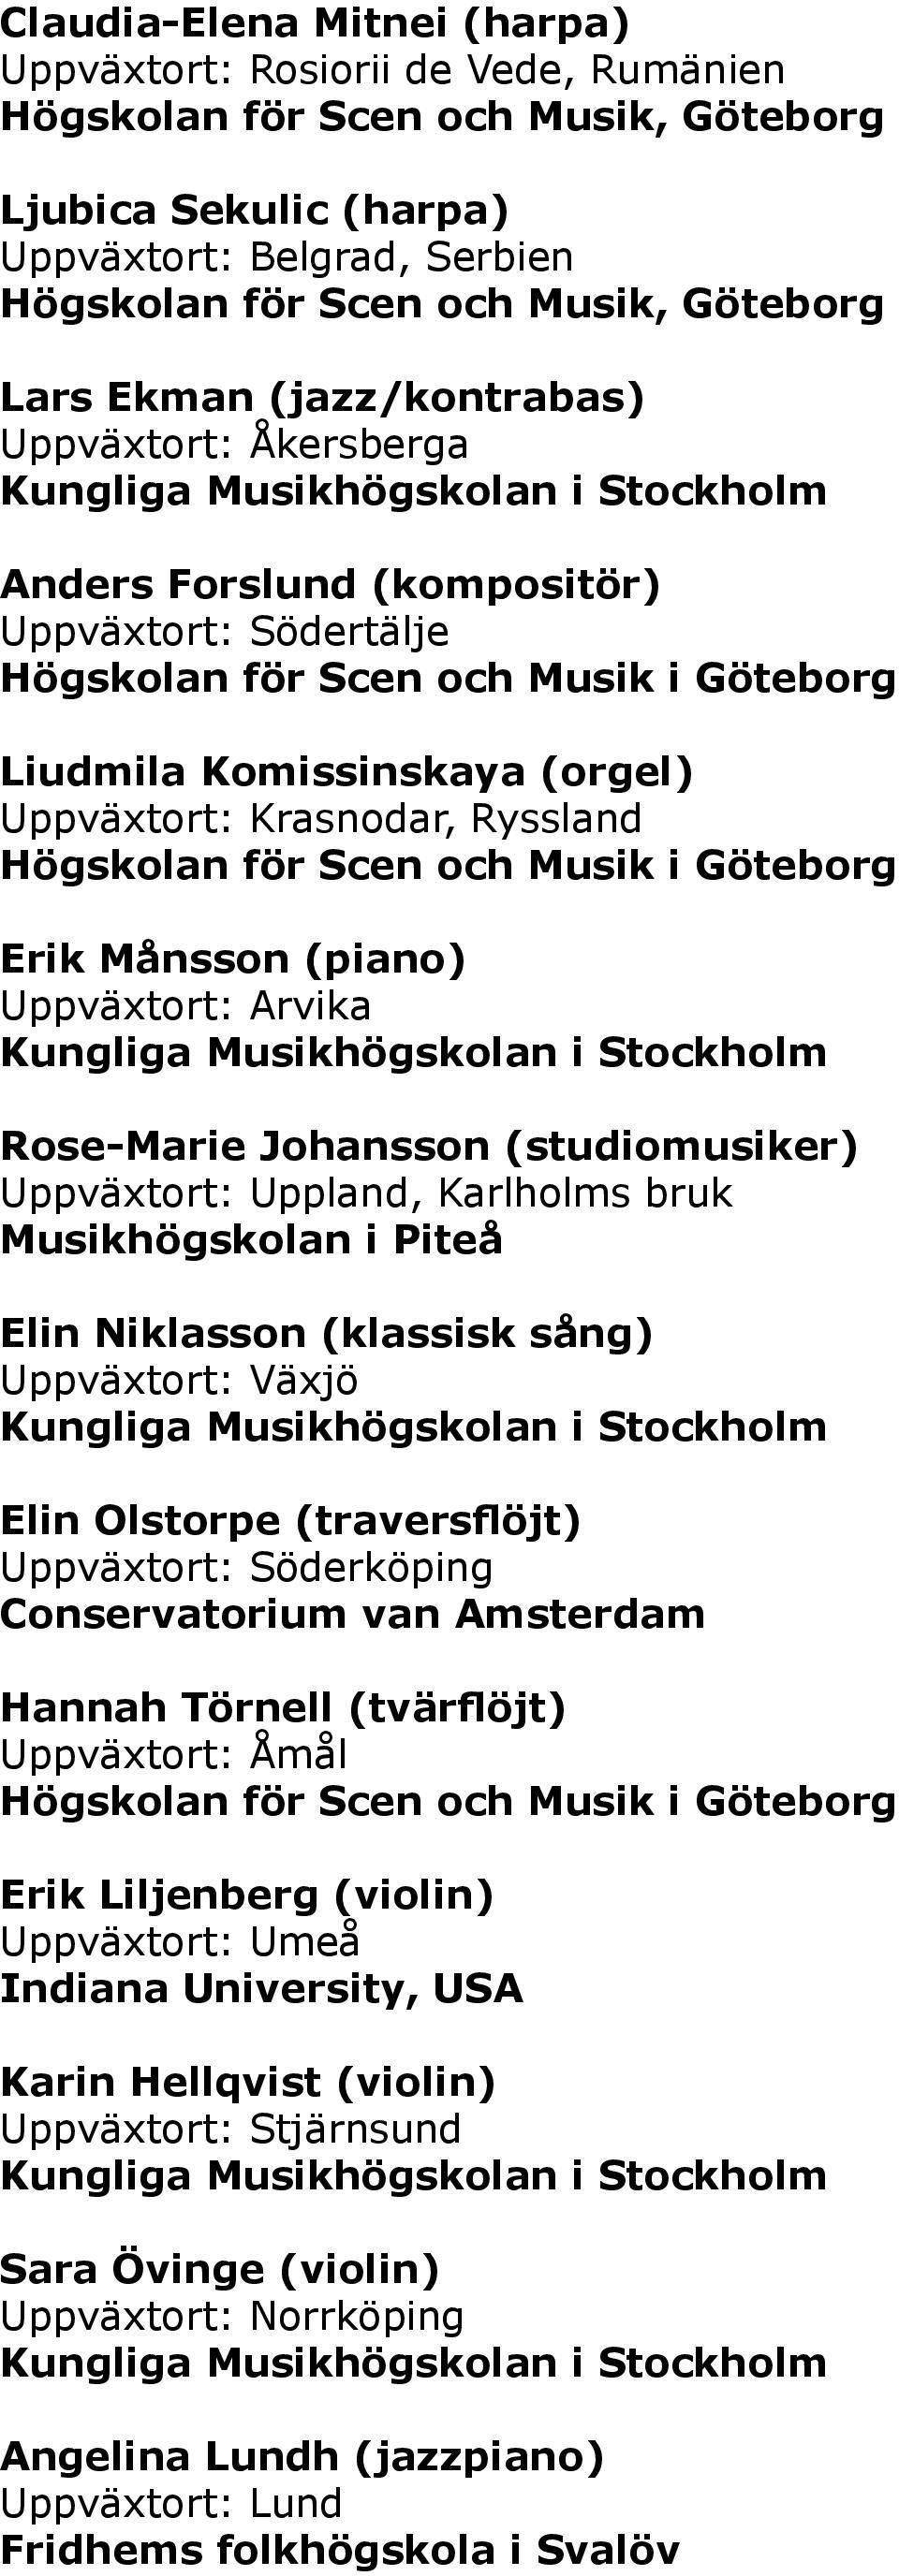 Arvika Rose-Marie Johansson (studiomusiker) Uppväxtort: Uppland, Karlholms bruk Musikhögskolan i Piteå Elin Niklasson (klassisk sång) Uppväxtort: Växjö Elin Olstorpe (traversflöjt) Uppväxtort: